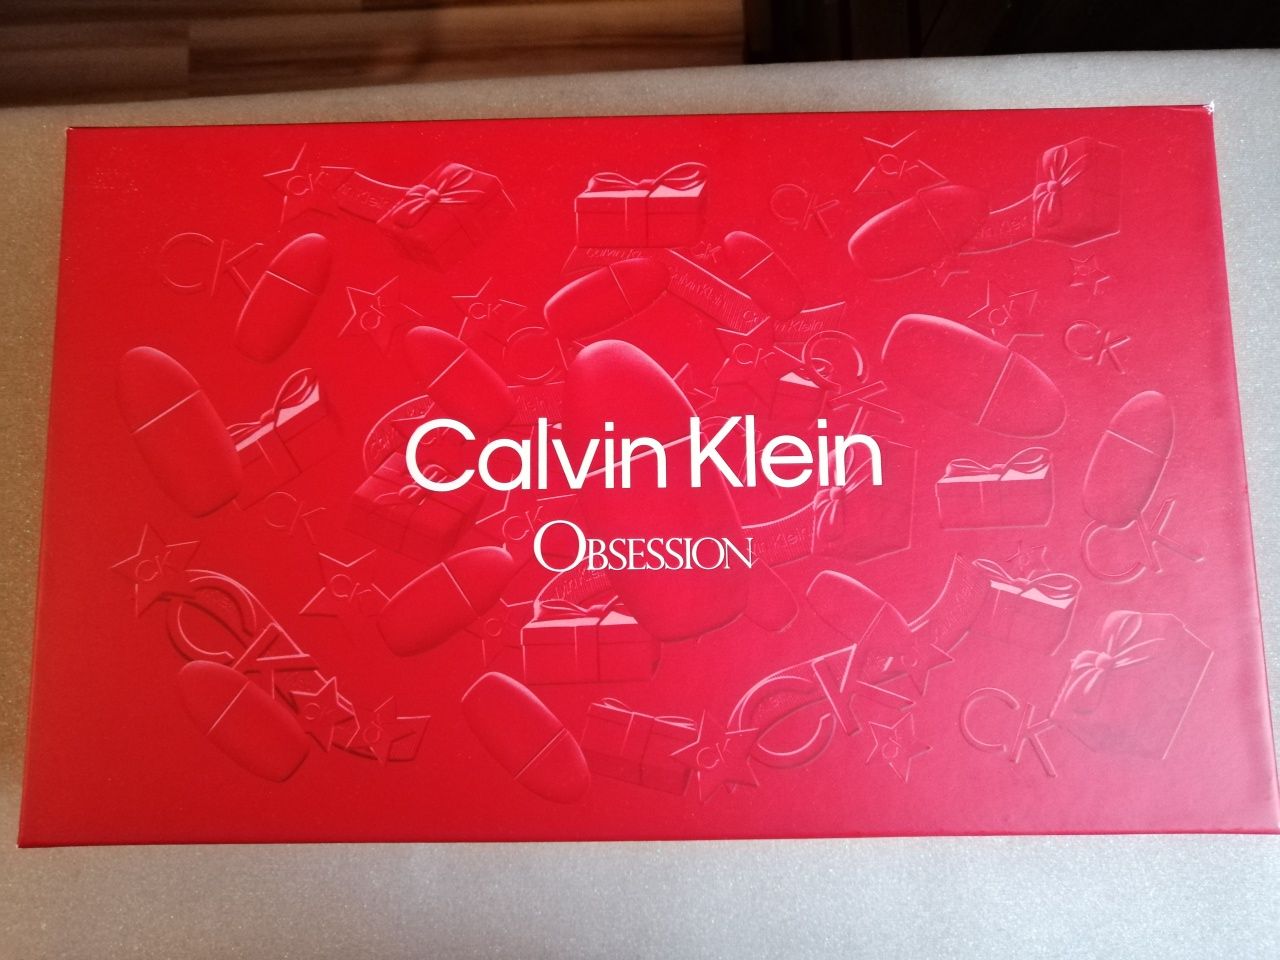 Zestaw  perfumy, balsam i żel  Calvin obsession Klein